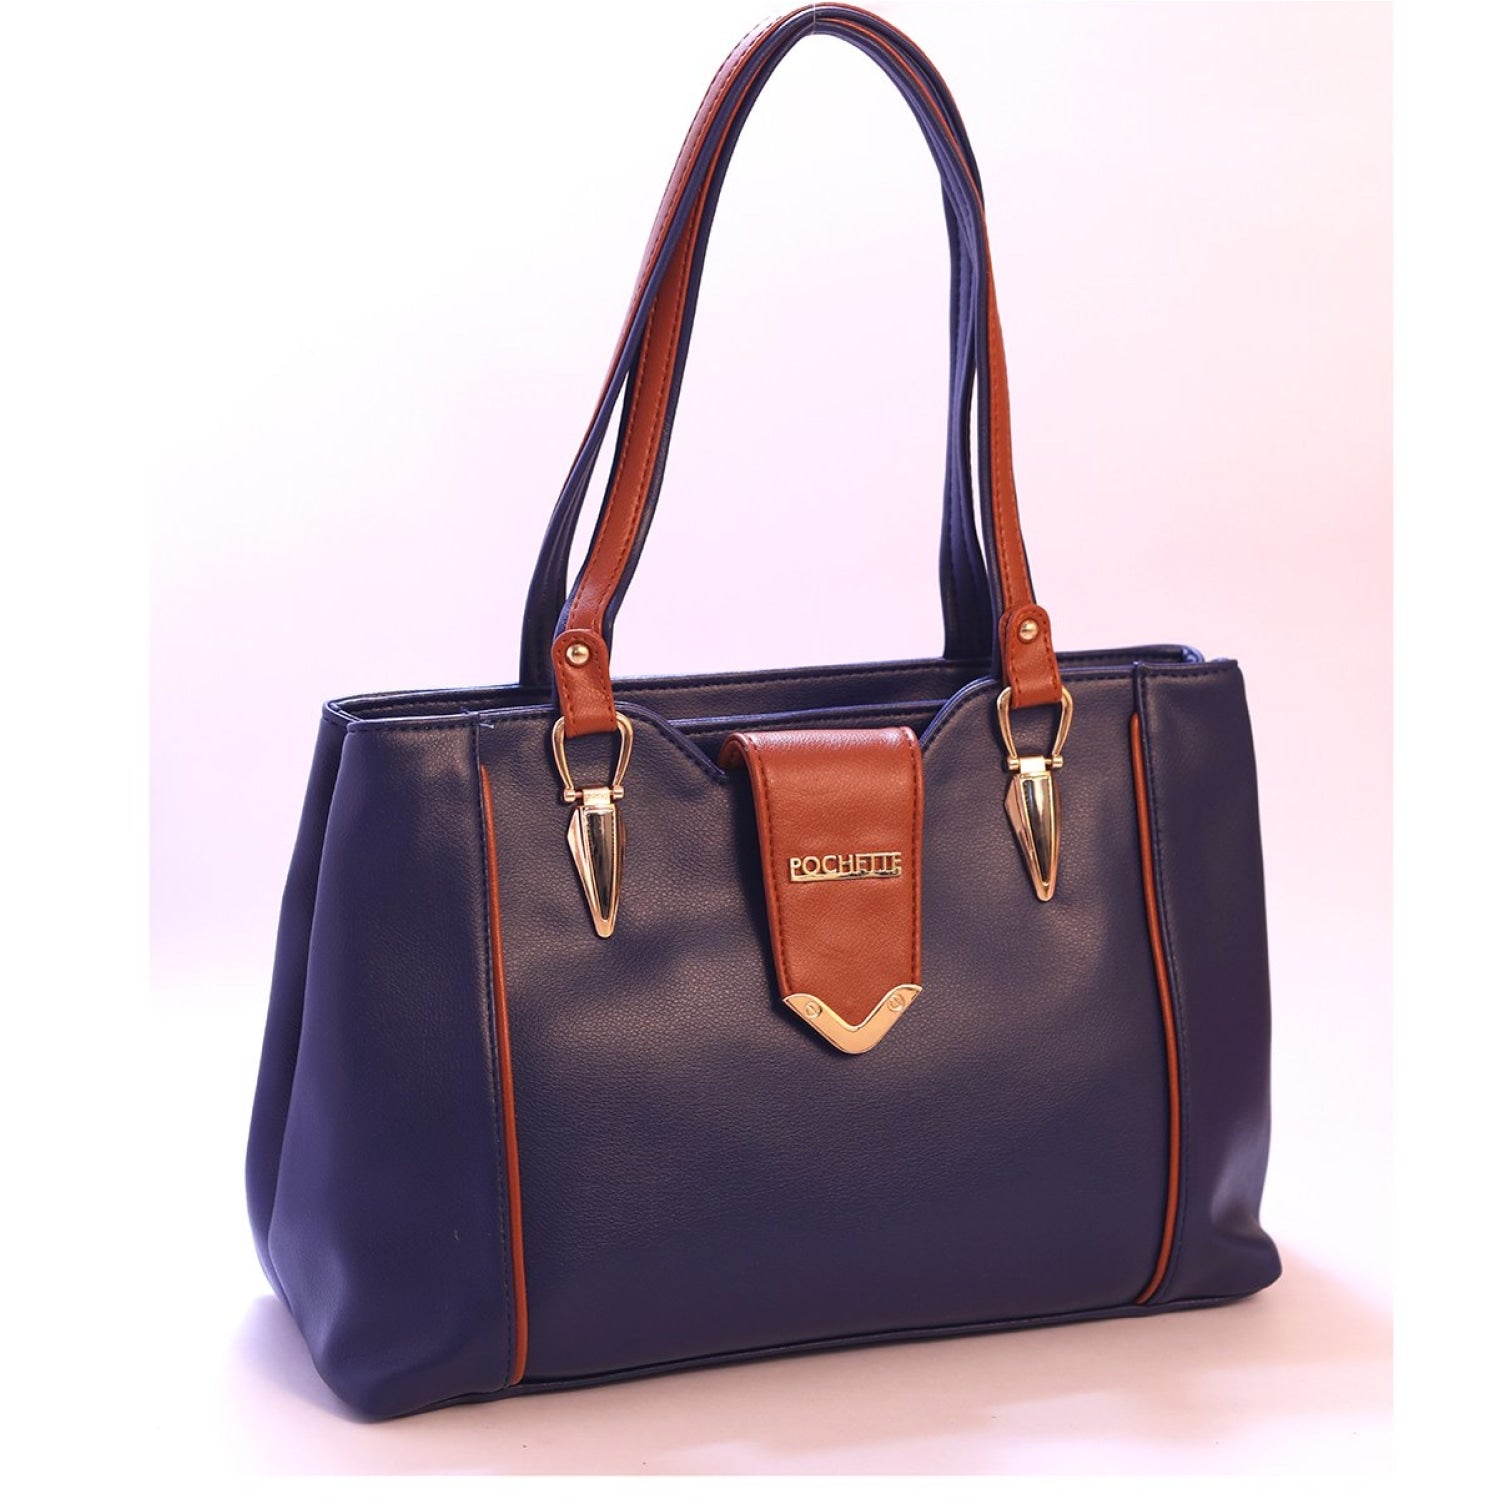 Pochette Midnight Blue Handbag. - HANDBAGS